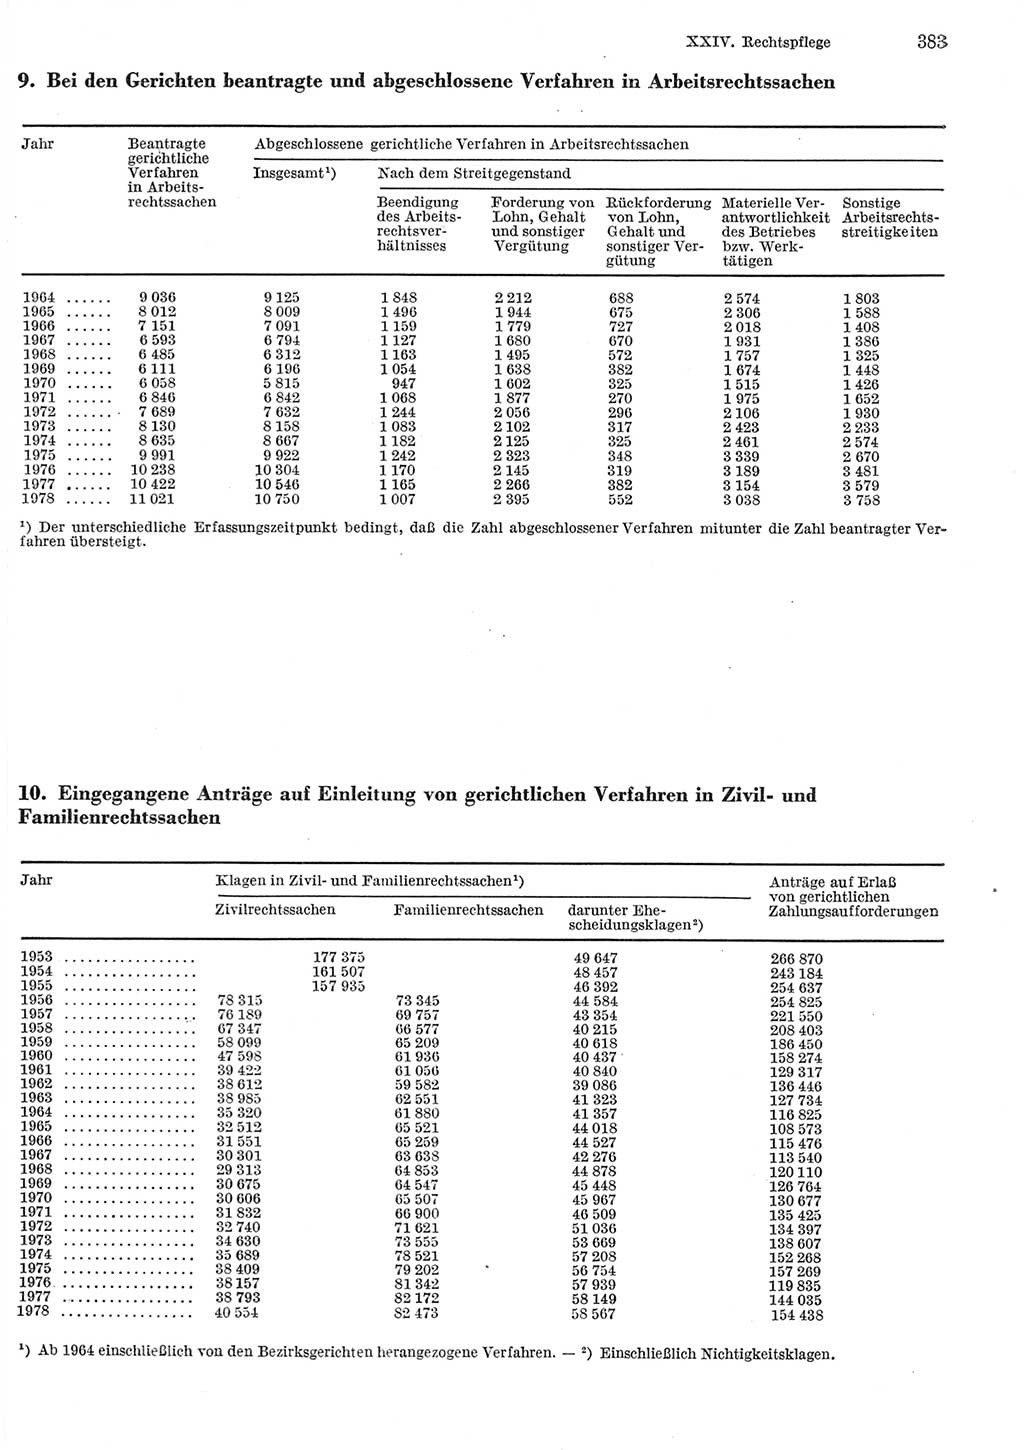 Statistisches Jahrbuch der Deutschen Demokratischen Republik (DDR) 1979, Seite 383 (Stat. Jb. DDR 1979, S. 383)